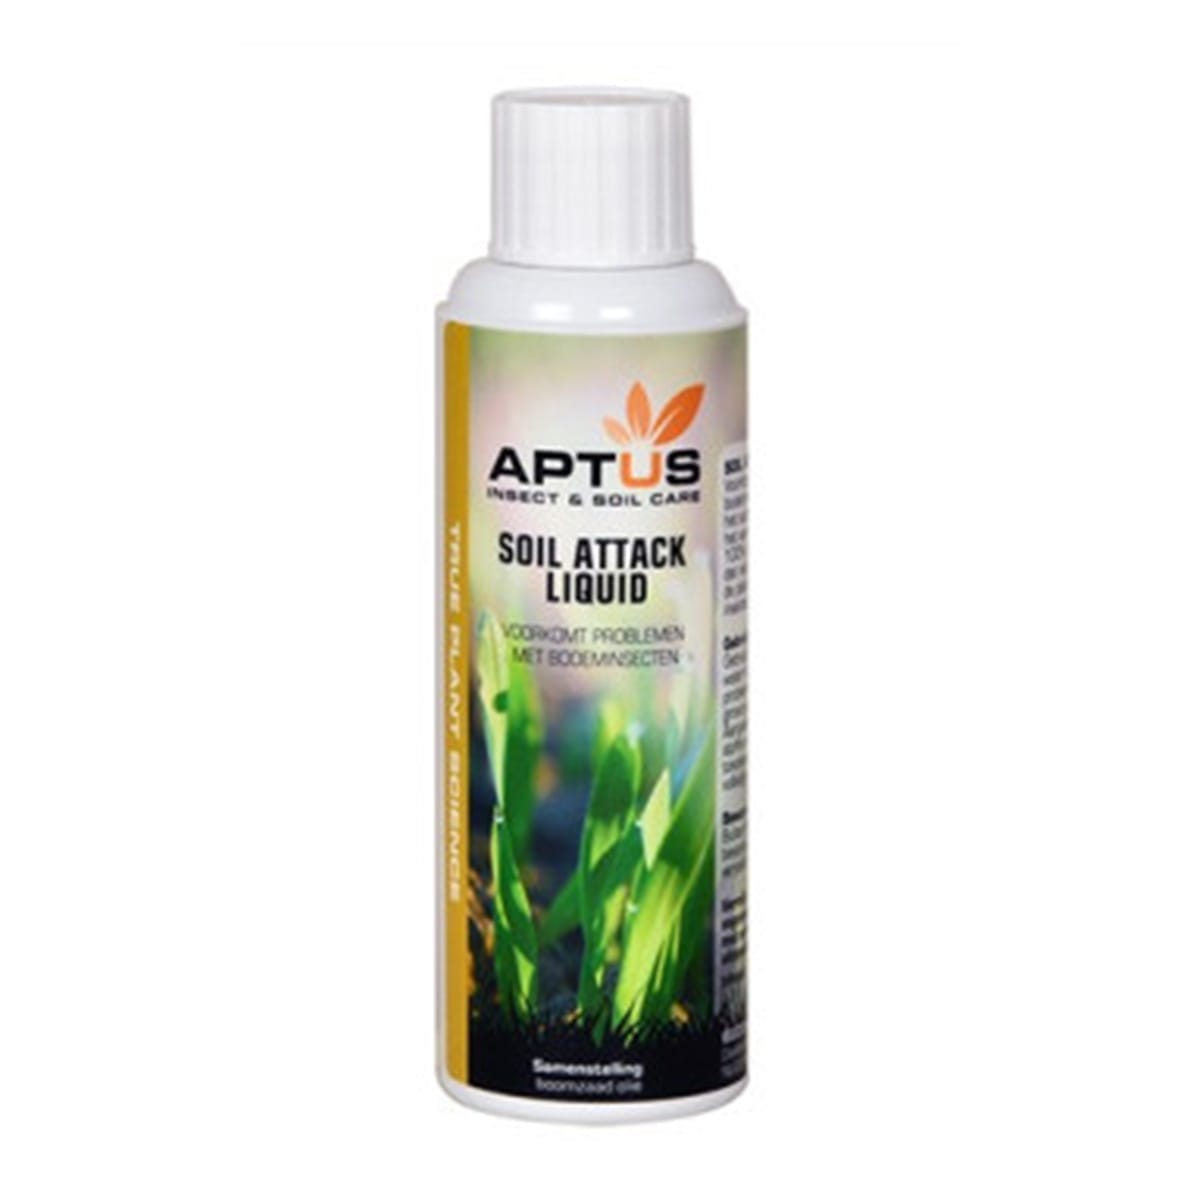 Aptus Soil Attack Liquid 100mL